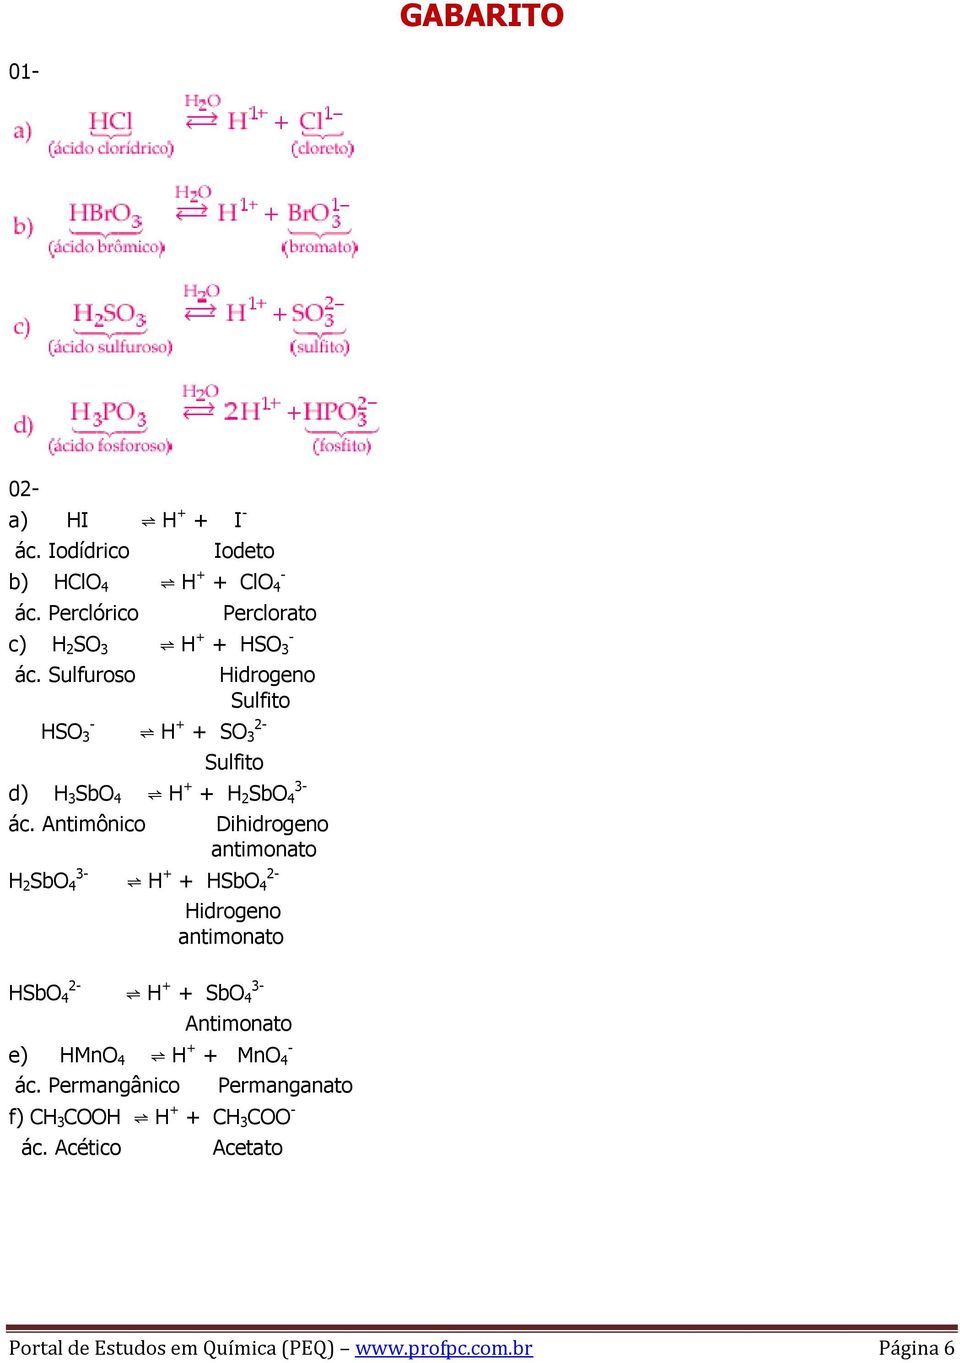 - Nitrito i) PO 4 Fosfato 05-06- D 07- a) Vinagre b) CH 3 COOH + H 2 O H 3 O + + CH 3 COO - 08-1,